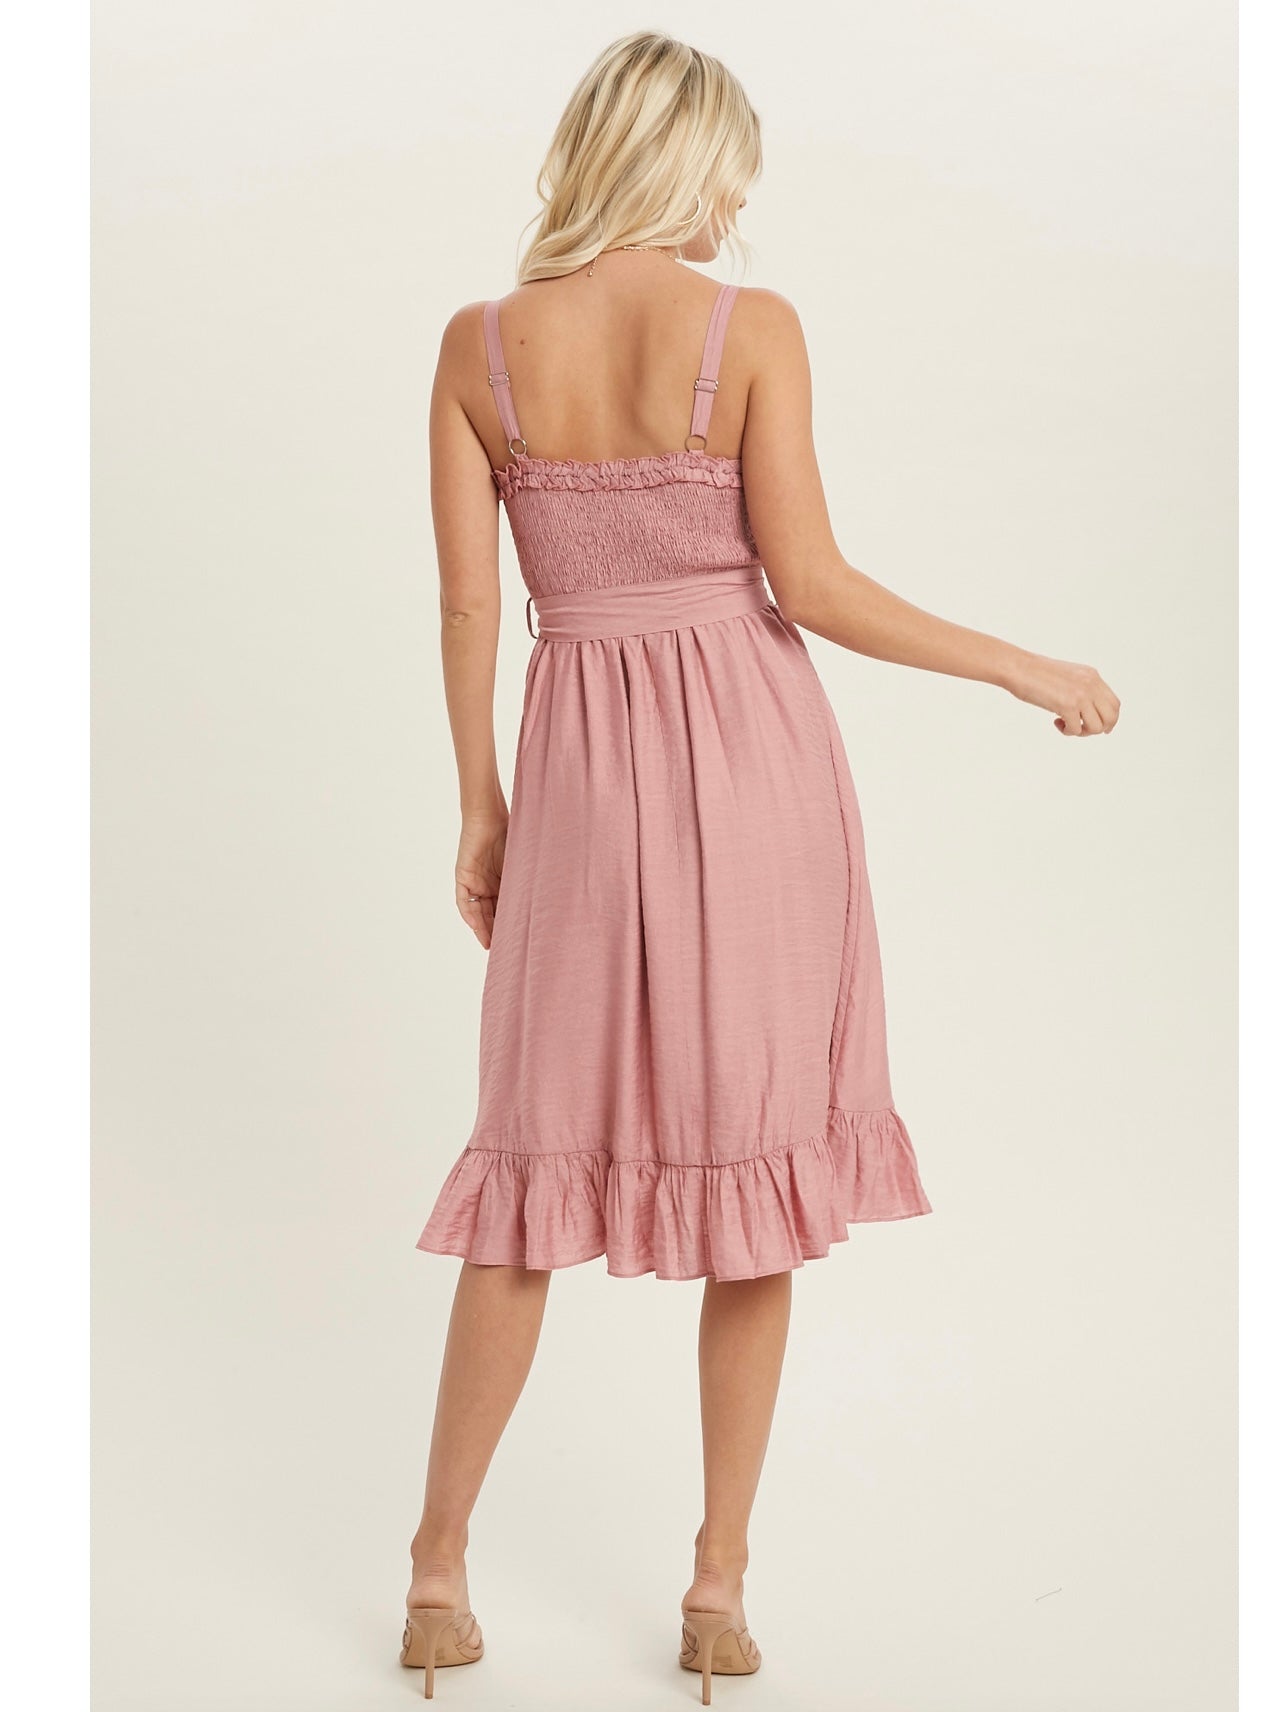 Sweetheart Ruffled Midi Dress in Dusty Pink